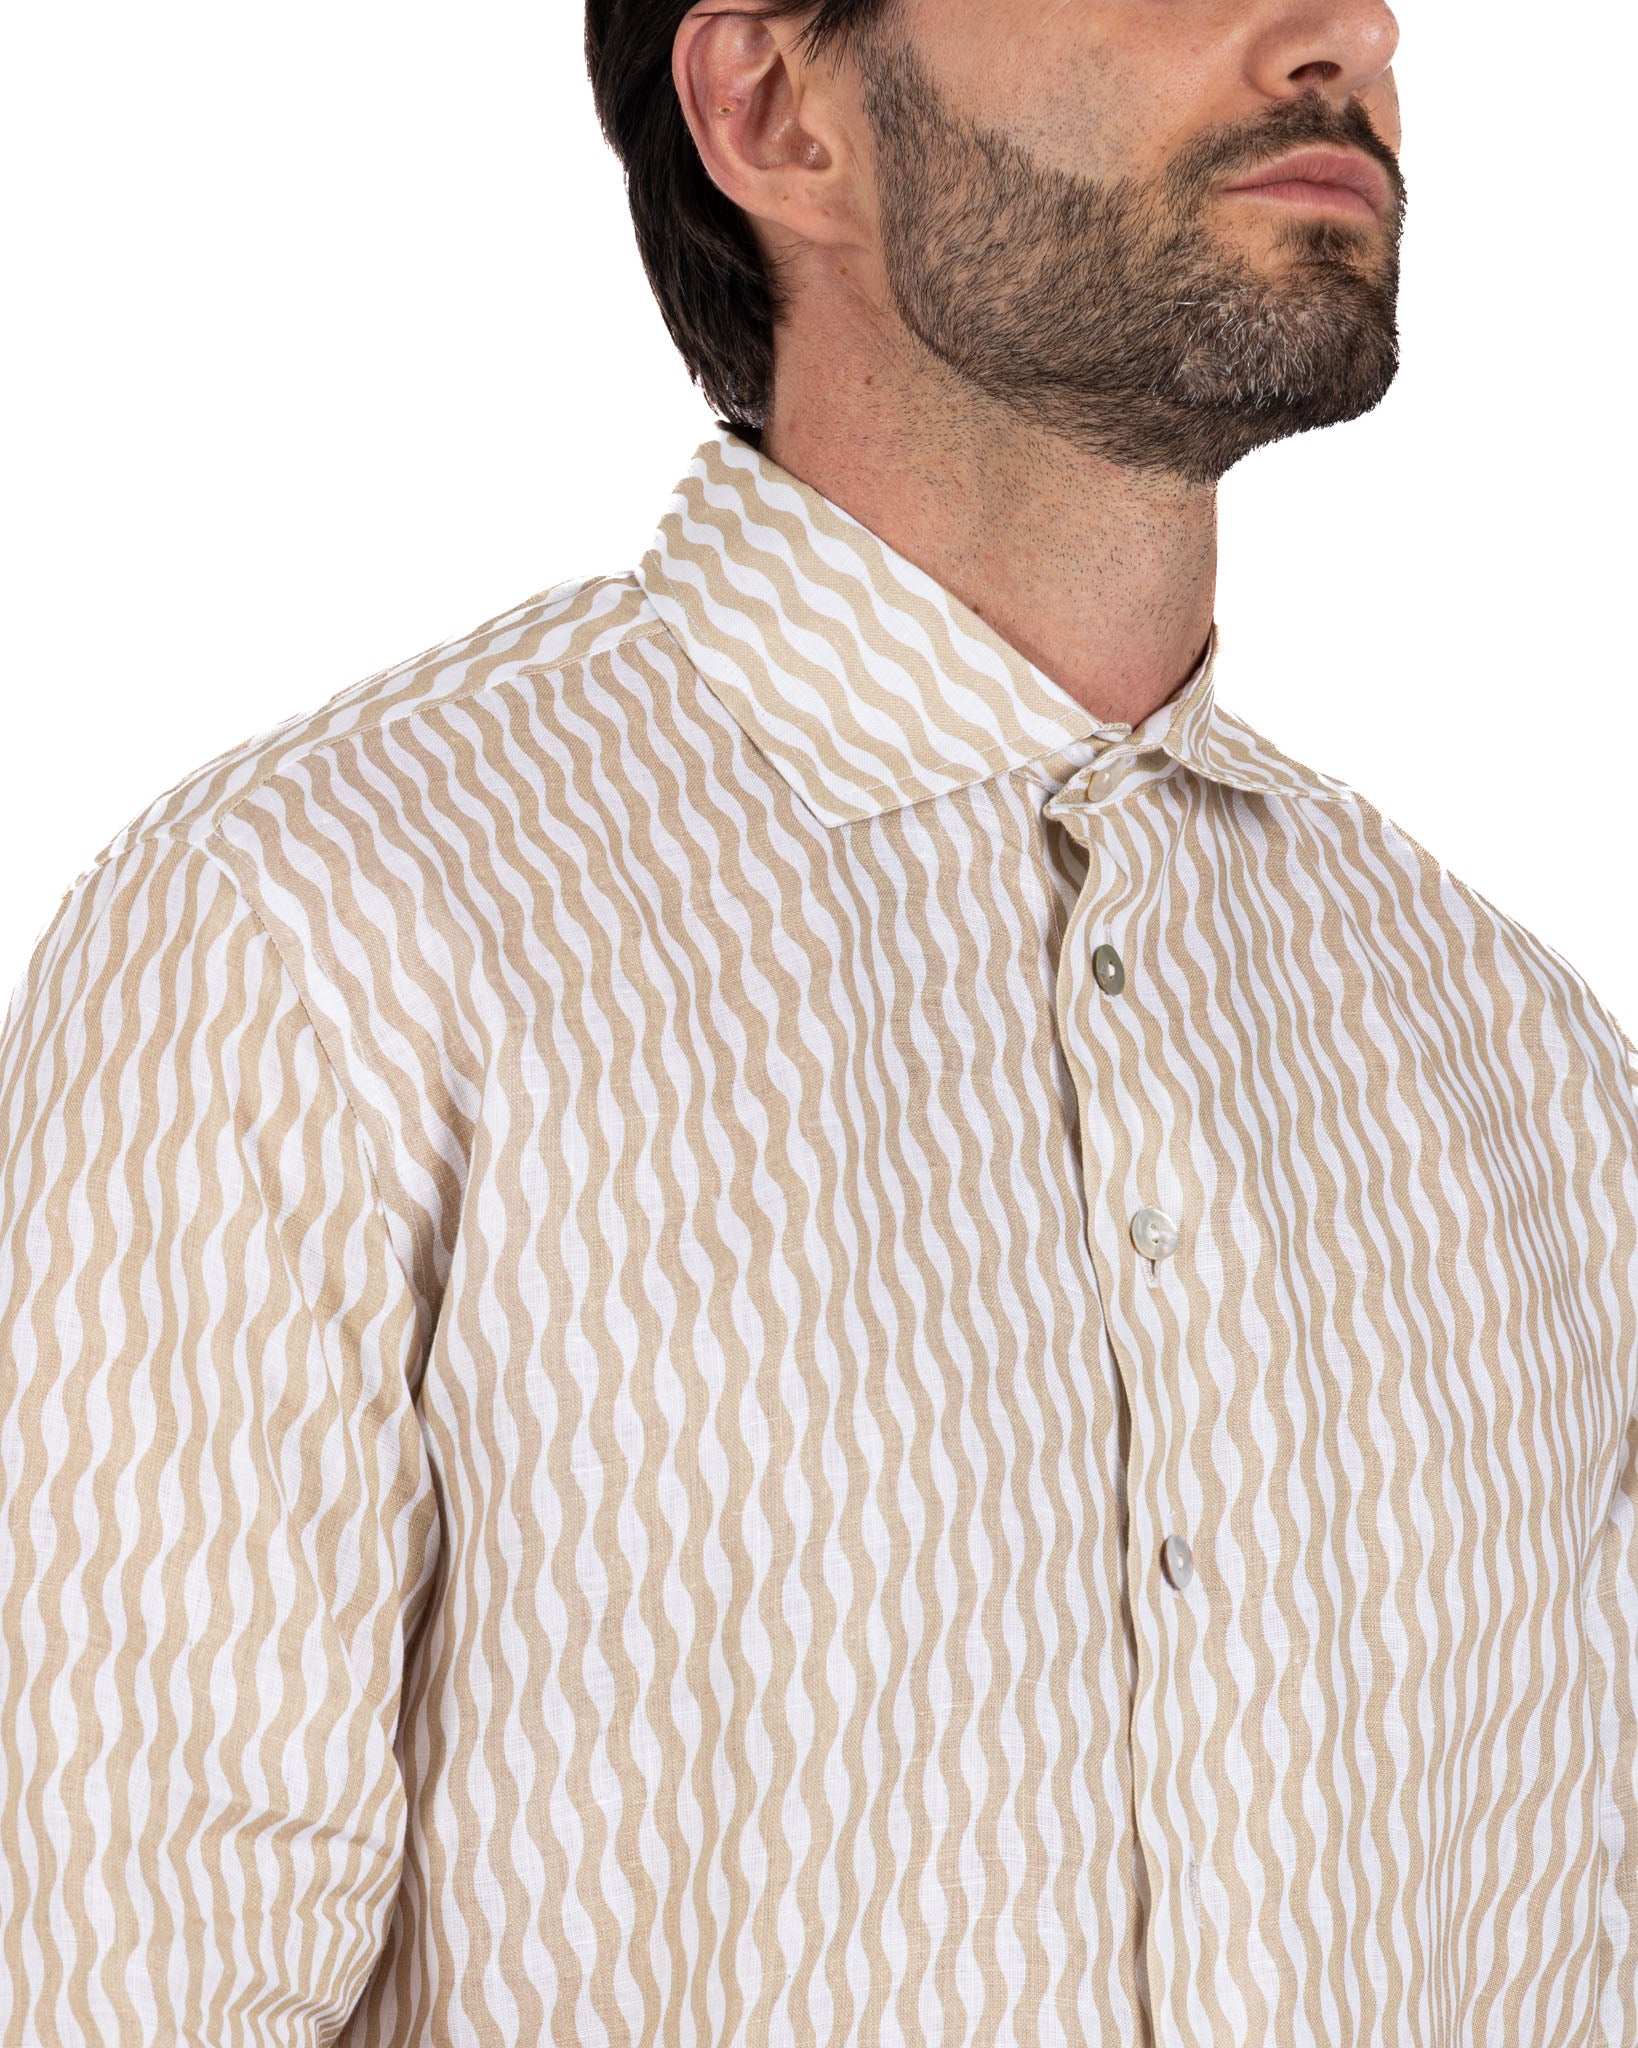 Onda - beige printed linen shirt